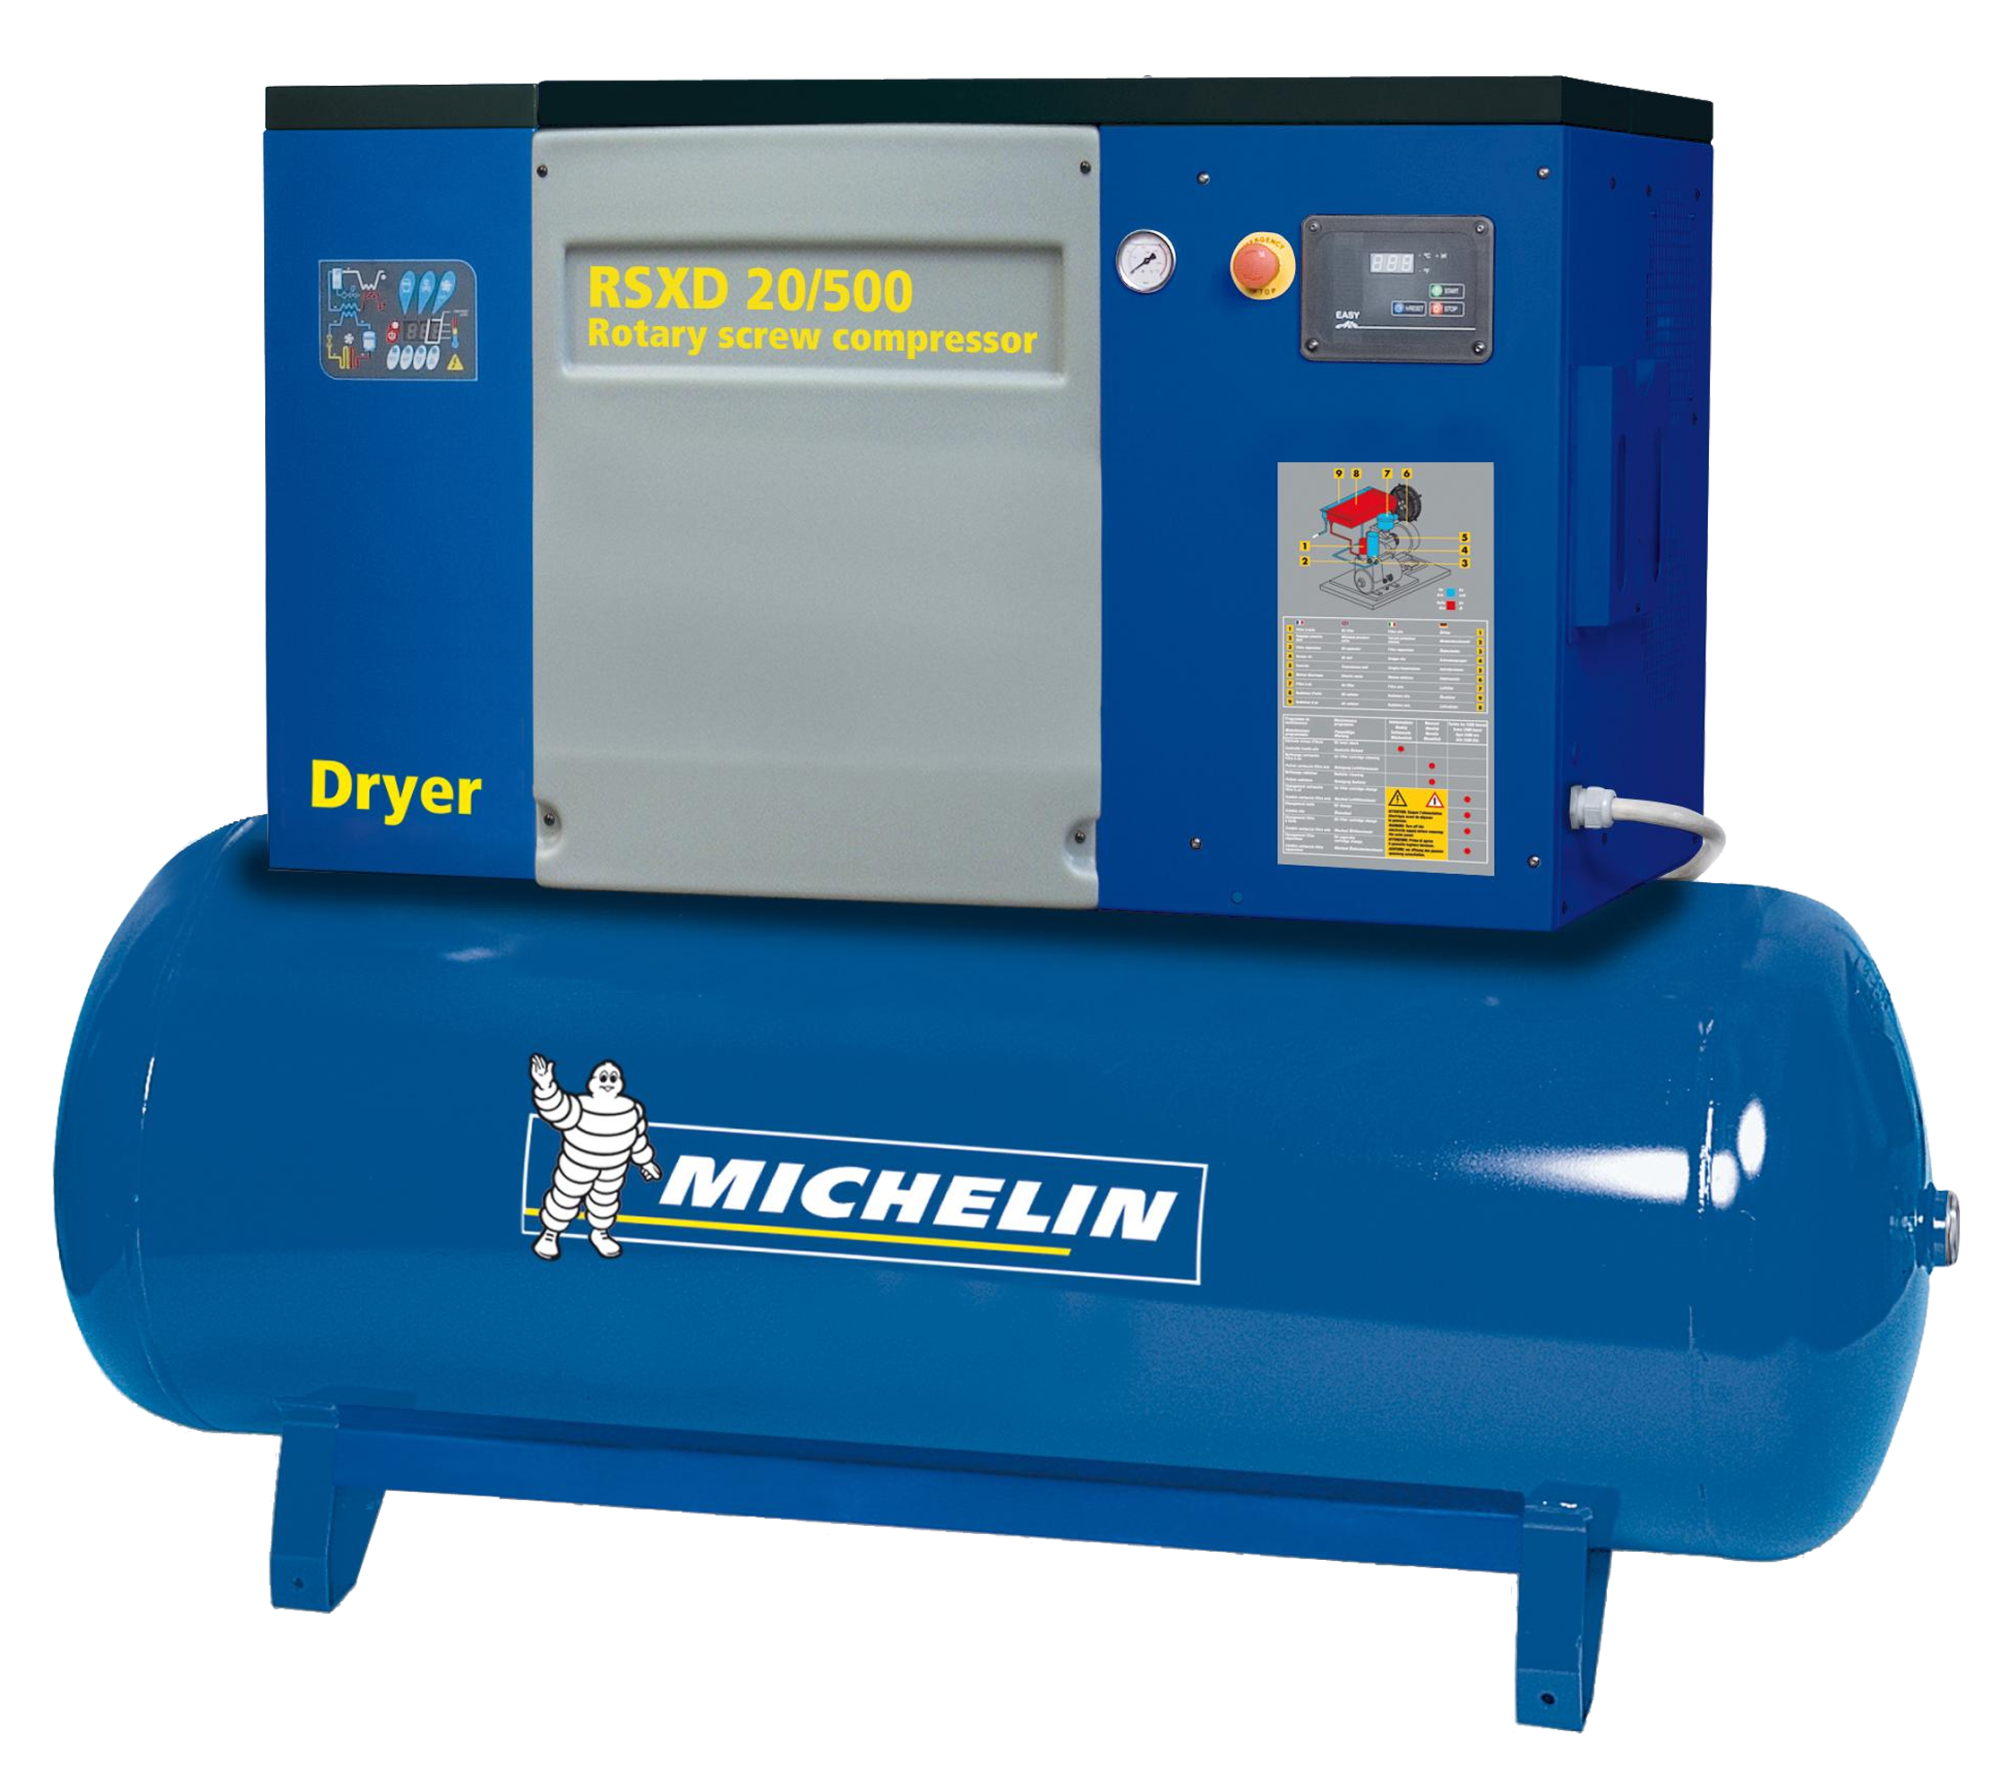 Compresor de tornillo michelin ca-rsxd20/500 de 20 cv y 500l de depósito